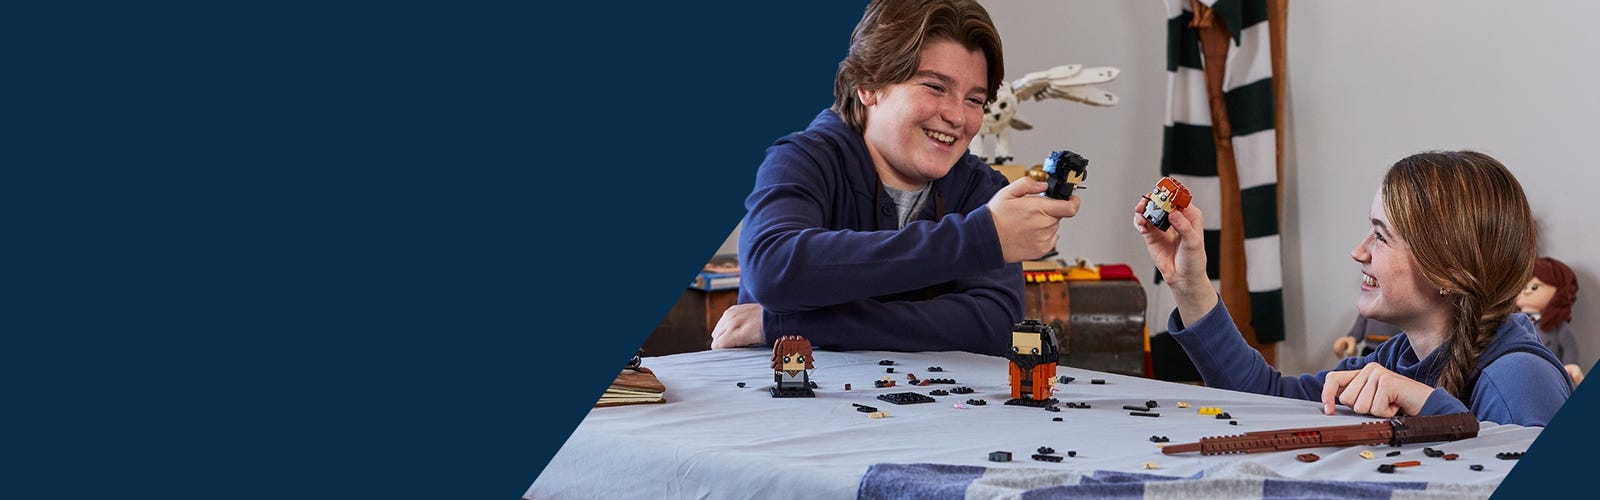 Deux enfants construisant des BrickHeadz à une table, ils tiennent dans leurs mains les personnages de Harry Potter et Ron